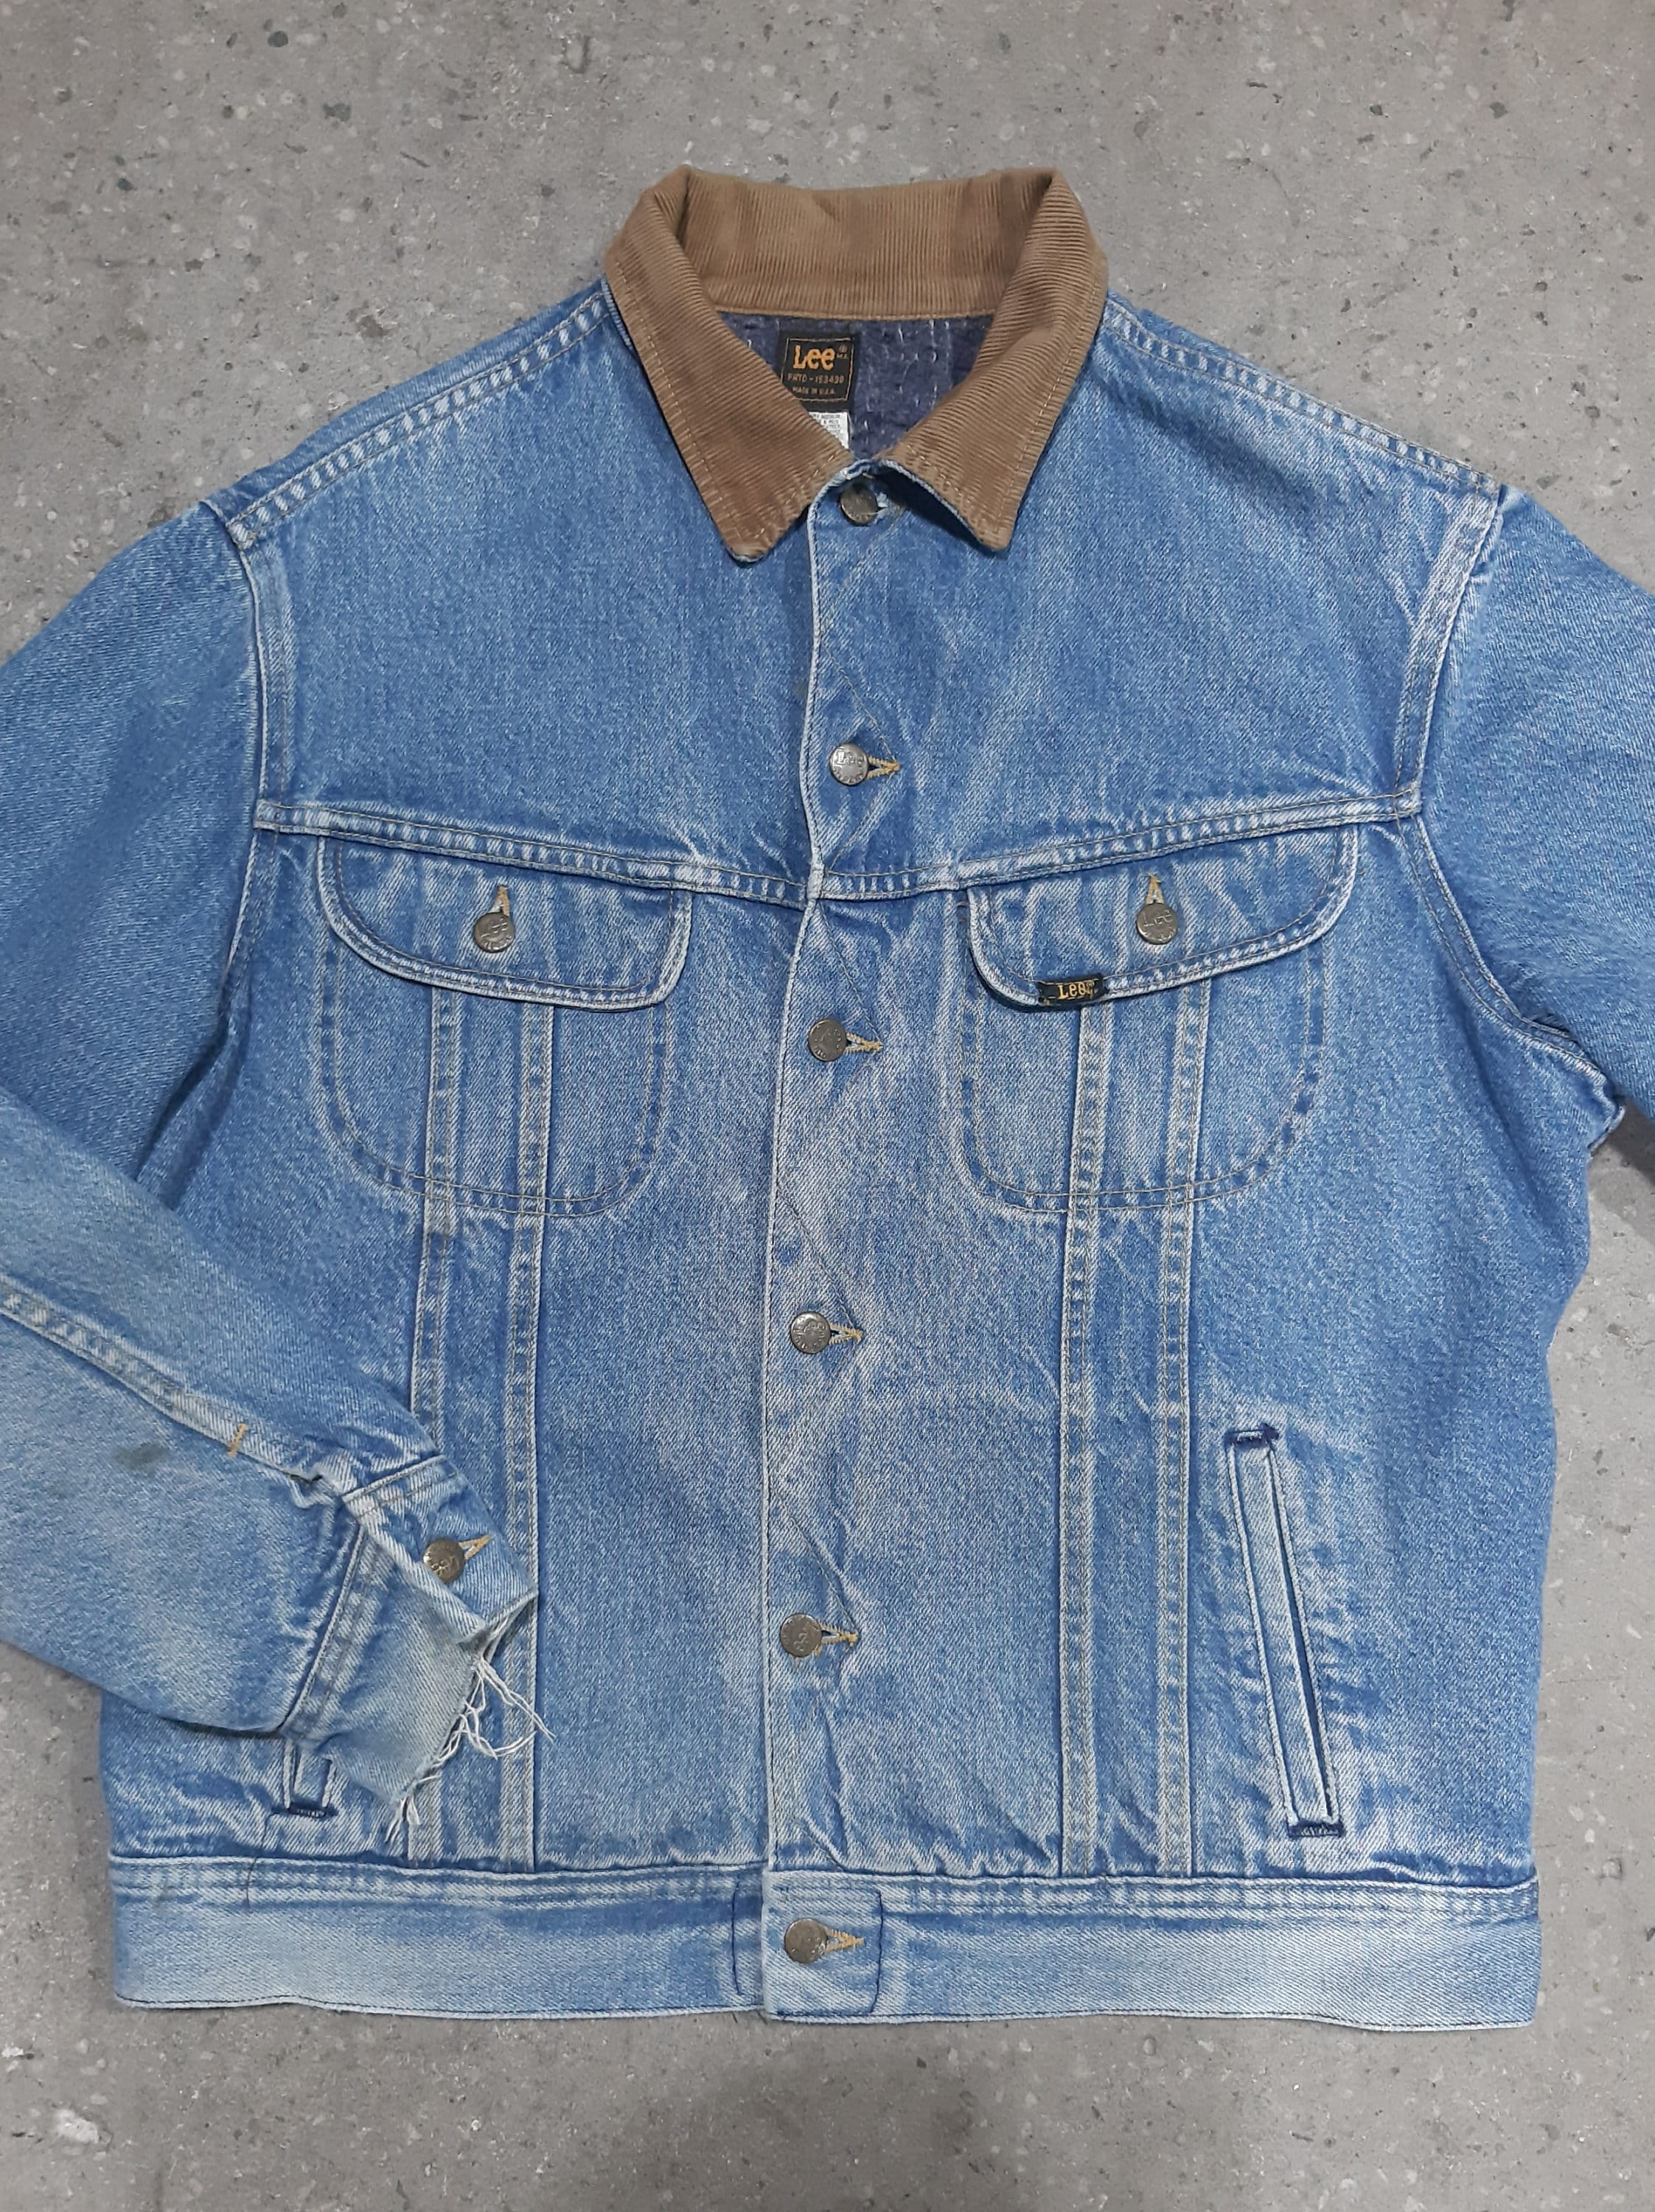 Blanket Lined Lee Rider Jacket | Denim shirt with jeans, Lee denim jacket,  Vintage denim jeans